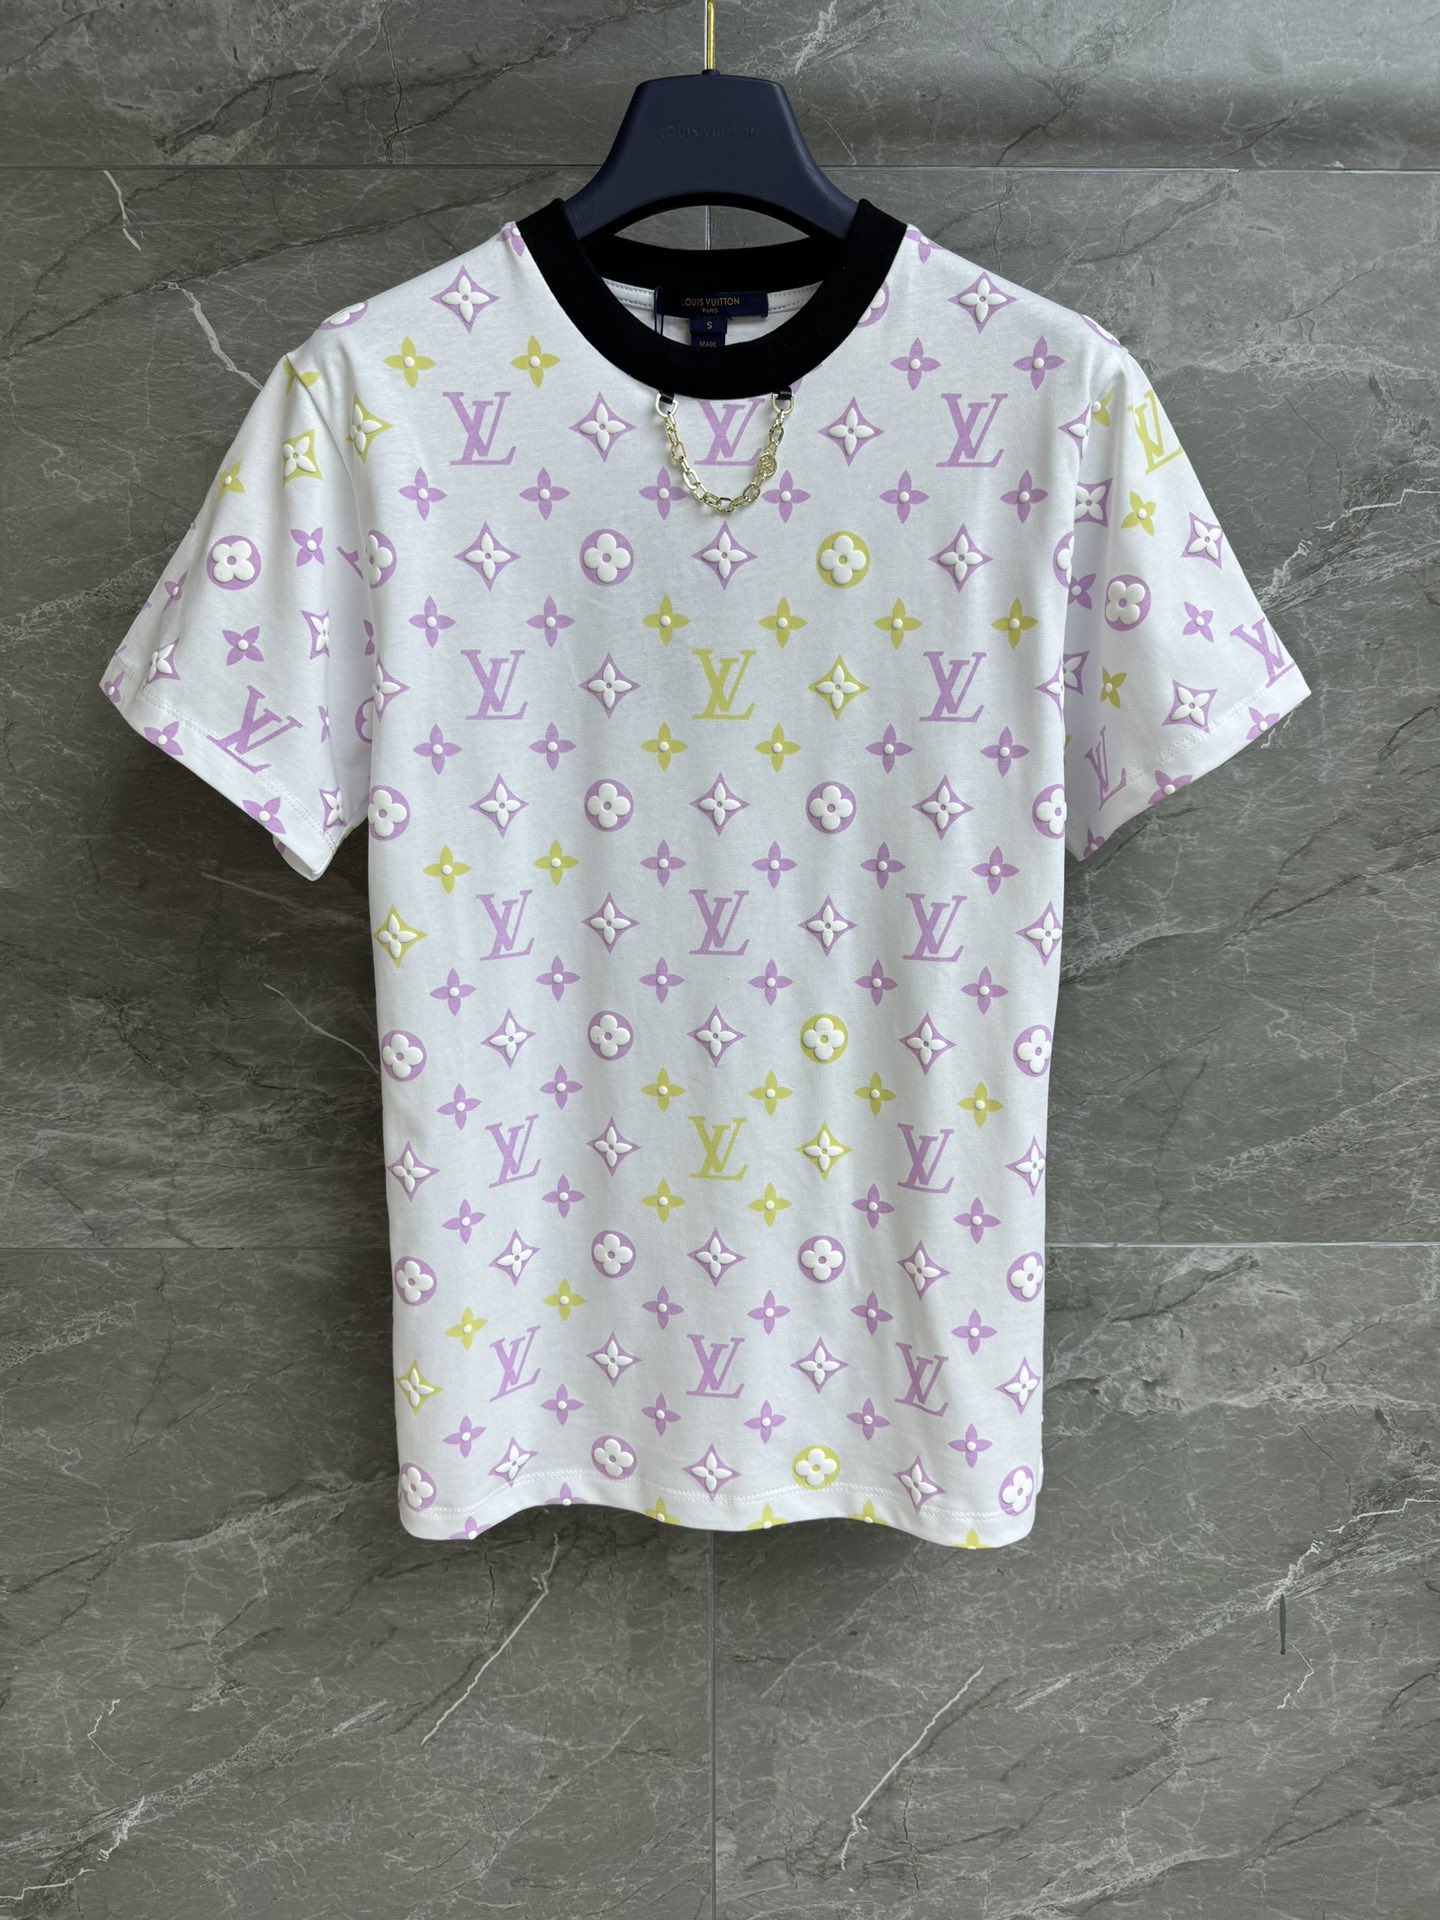 Beste kwaliteit nep
 Louis Vuitton Kleding T-Shirt Afdrukken Katoen Herfstcollectie